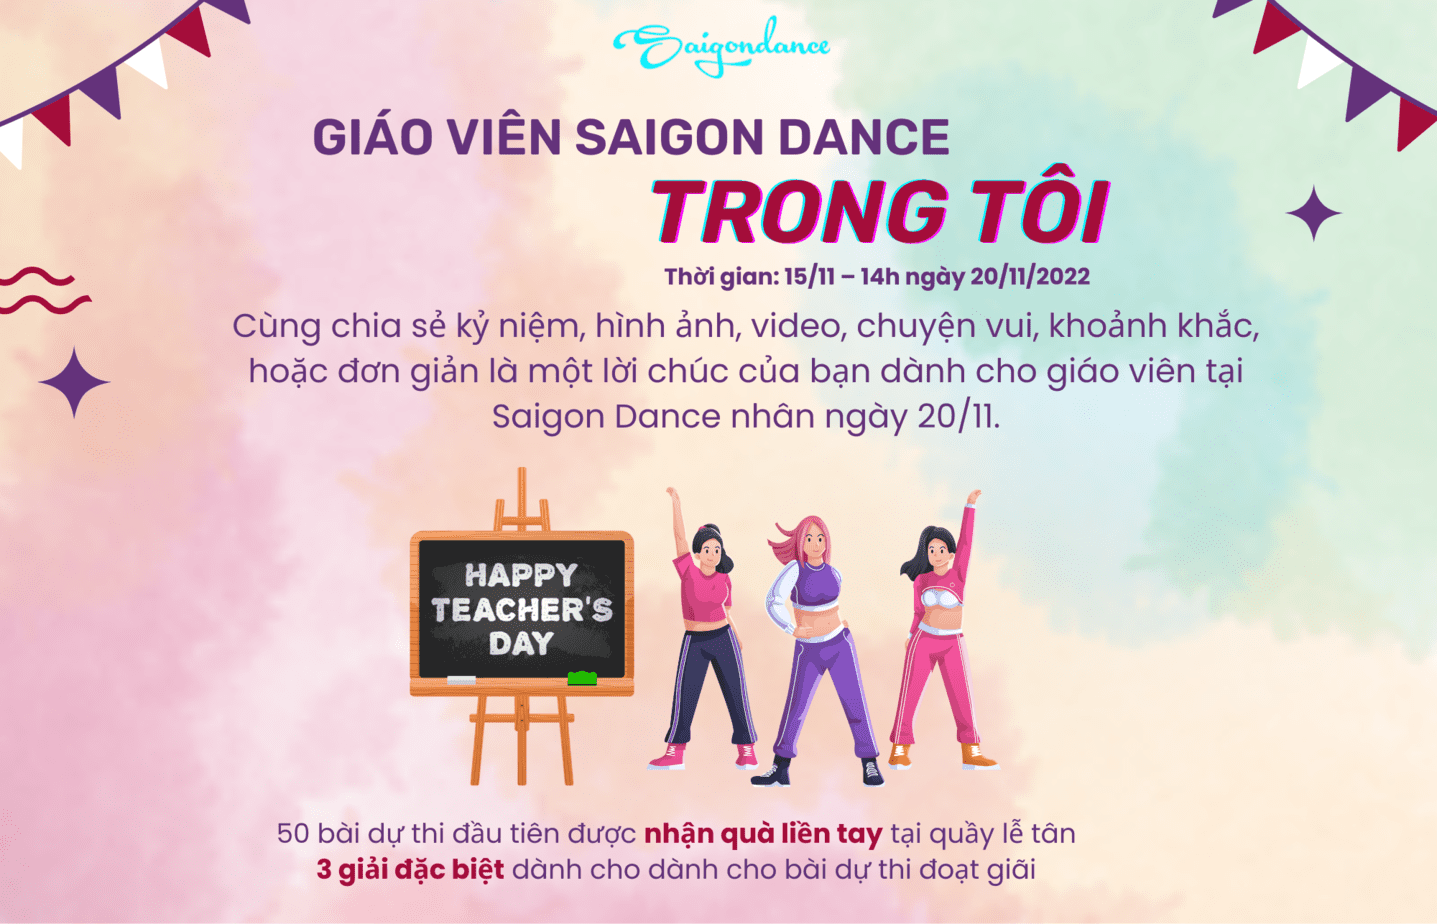 Nhận quà liền tay cùng Cuộc thi "Giáo viên Saigon Dance trong tôi" 8